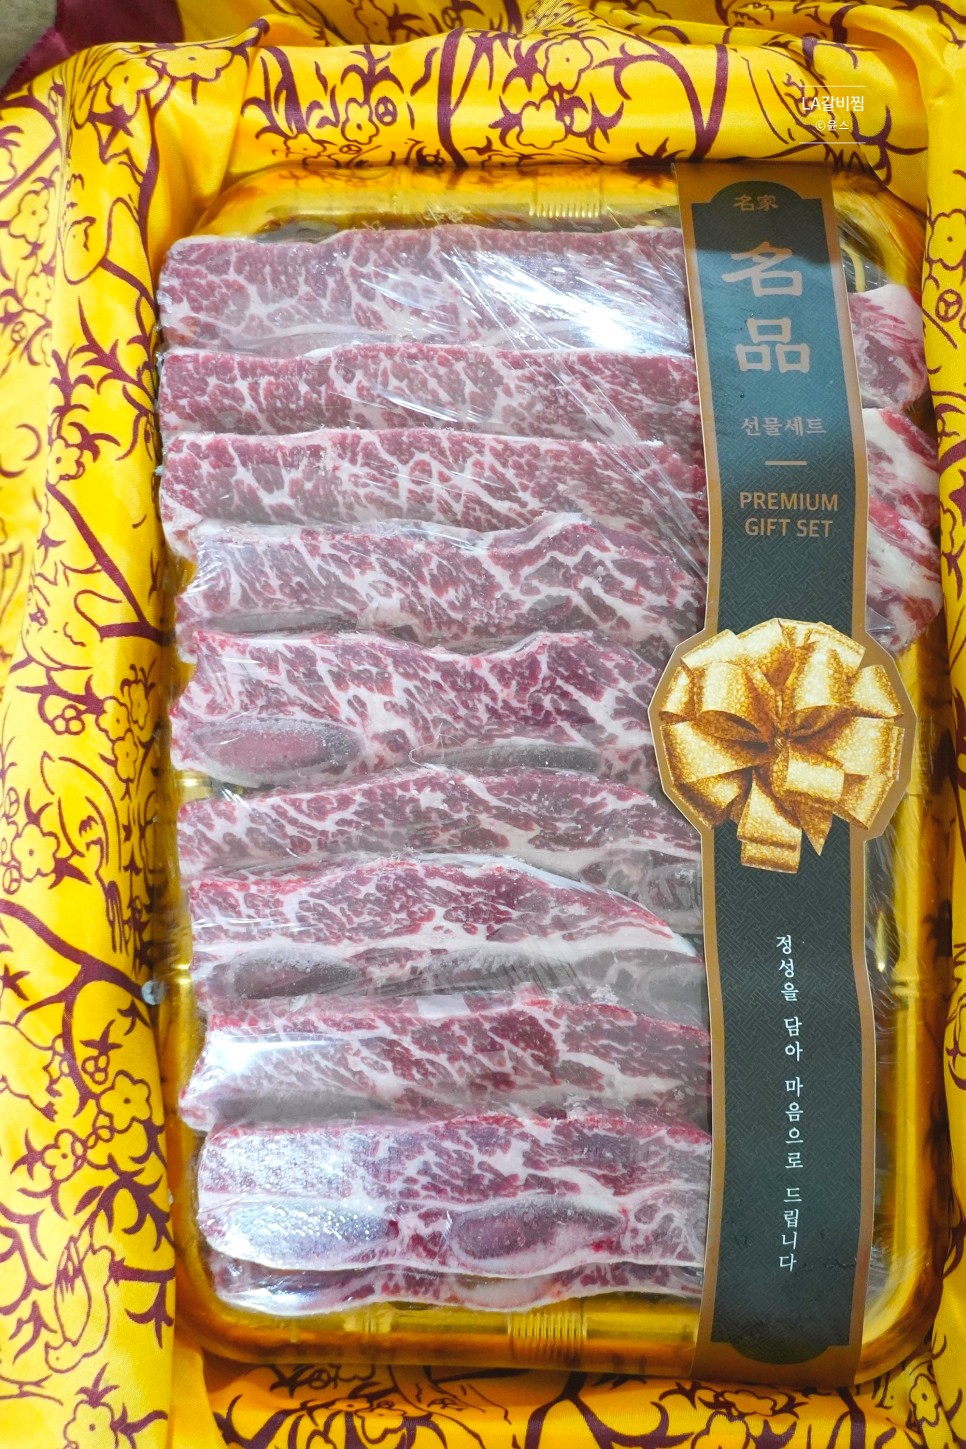 소갈비찜 레시피 소갈비찜 양념 만드는 법 LA갈비찜 소갈비양념 갈비선물세트